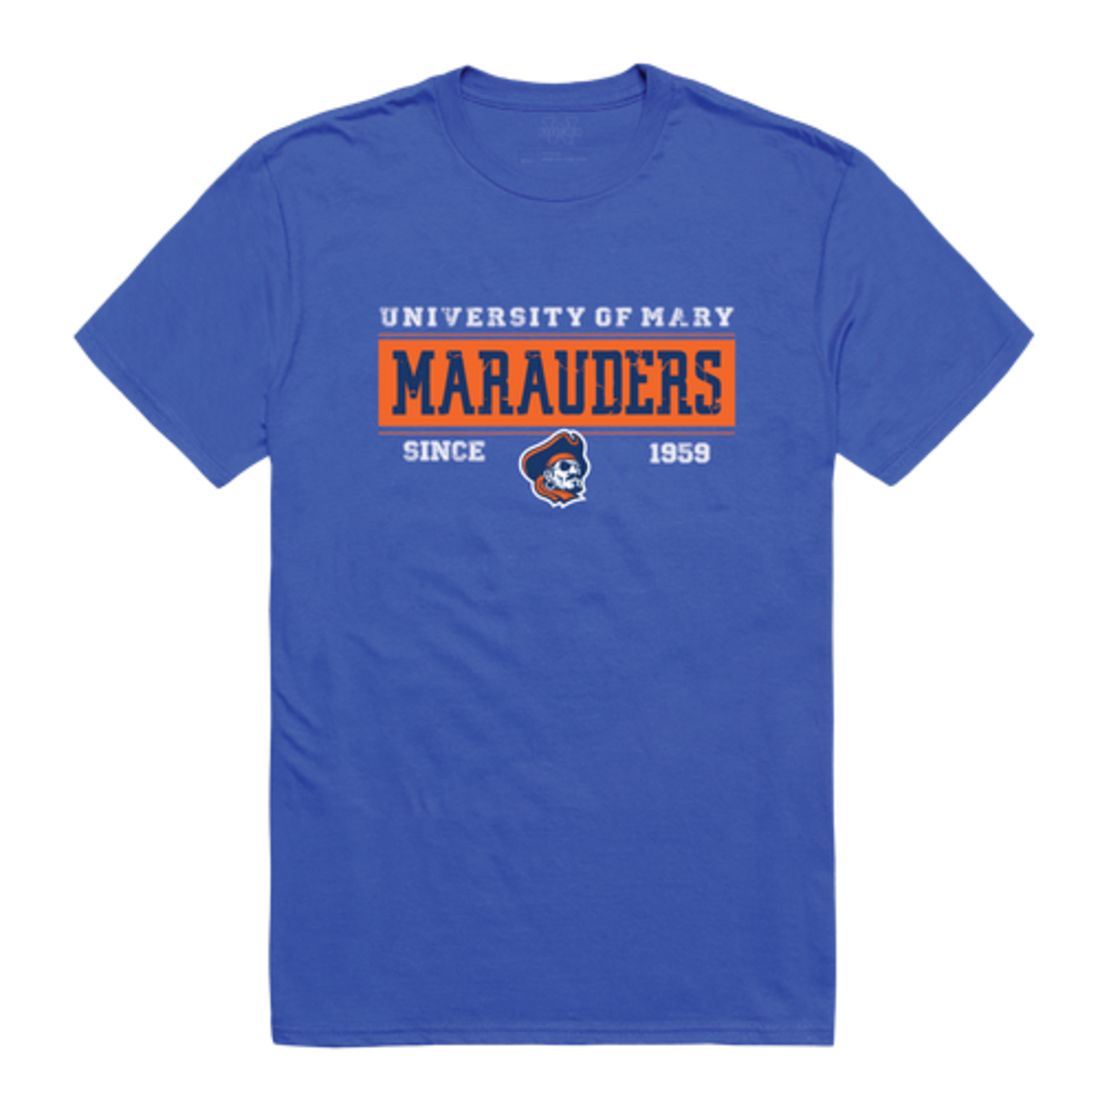 University of Mary Marauders Established T-Shirt